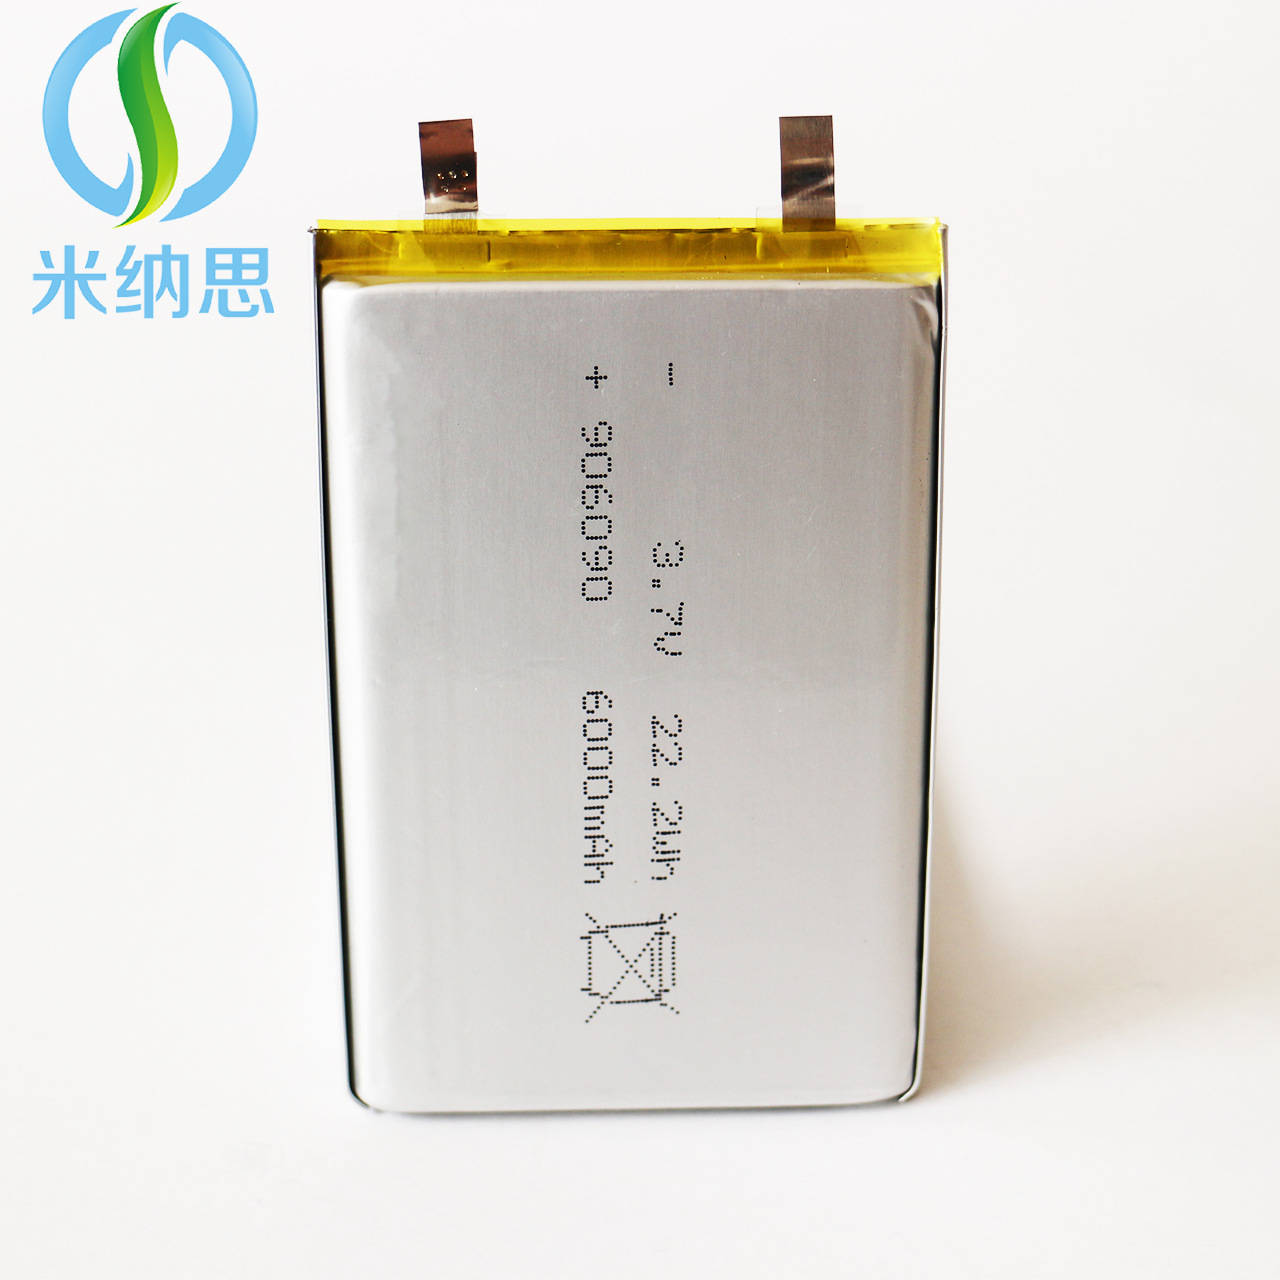 聚合物电芯906090 6000mah聚合物电池 移动电源聚合物锂电池3.7V